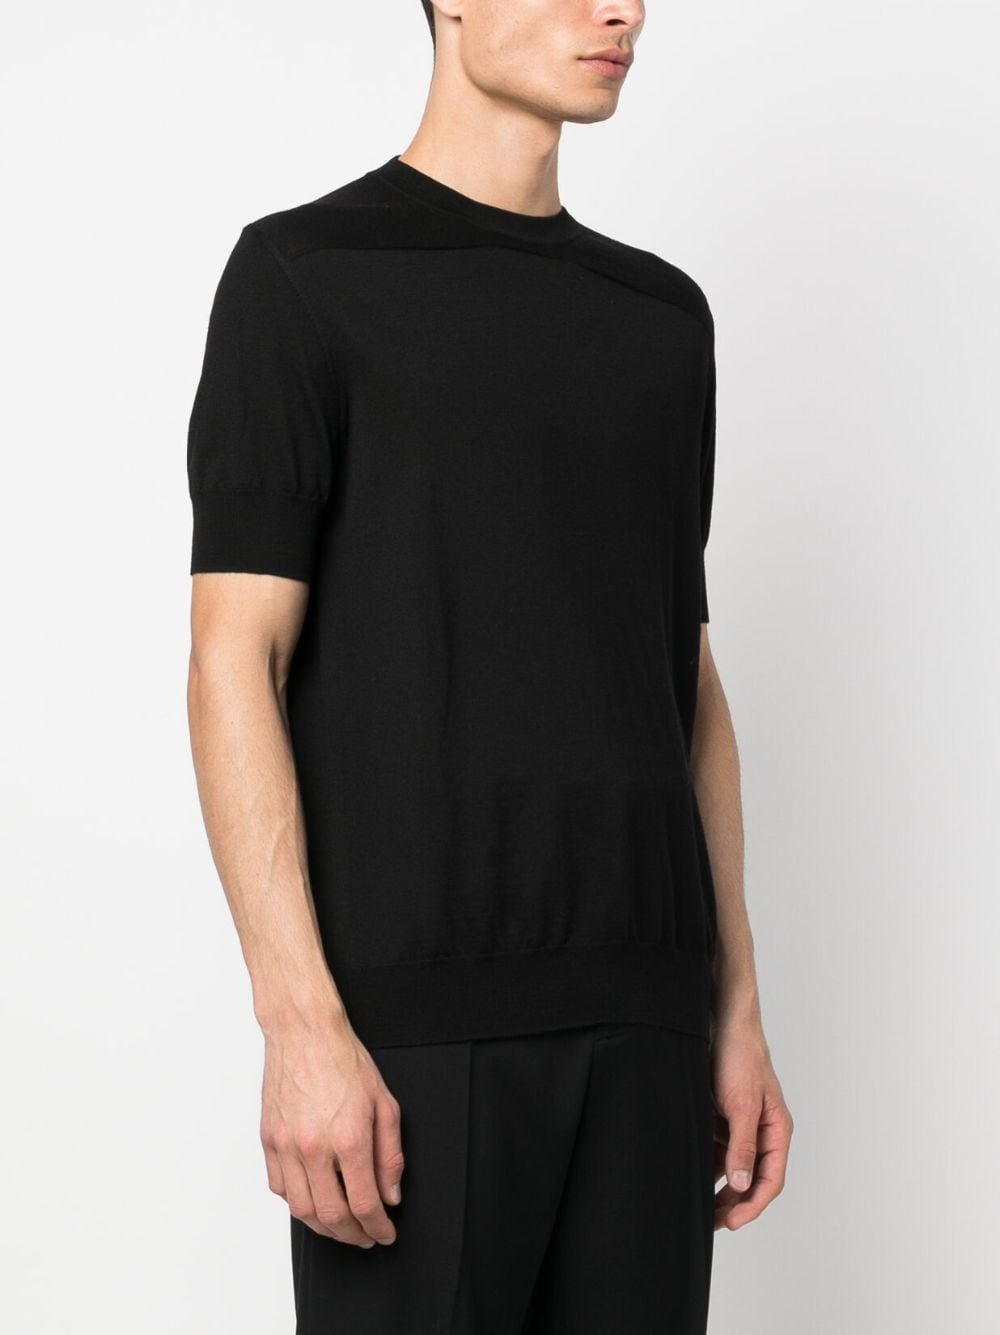 Black thin-knit T-shirt